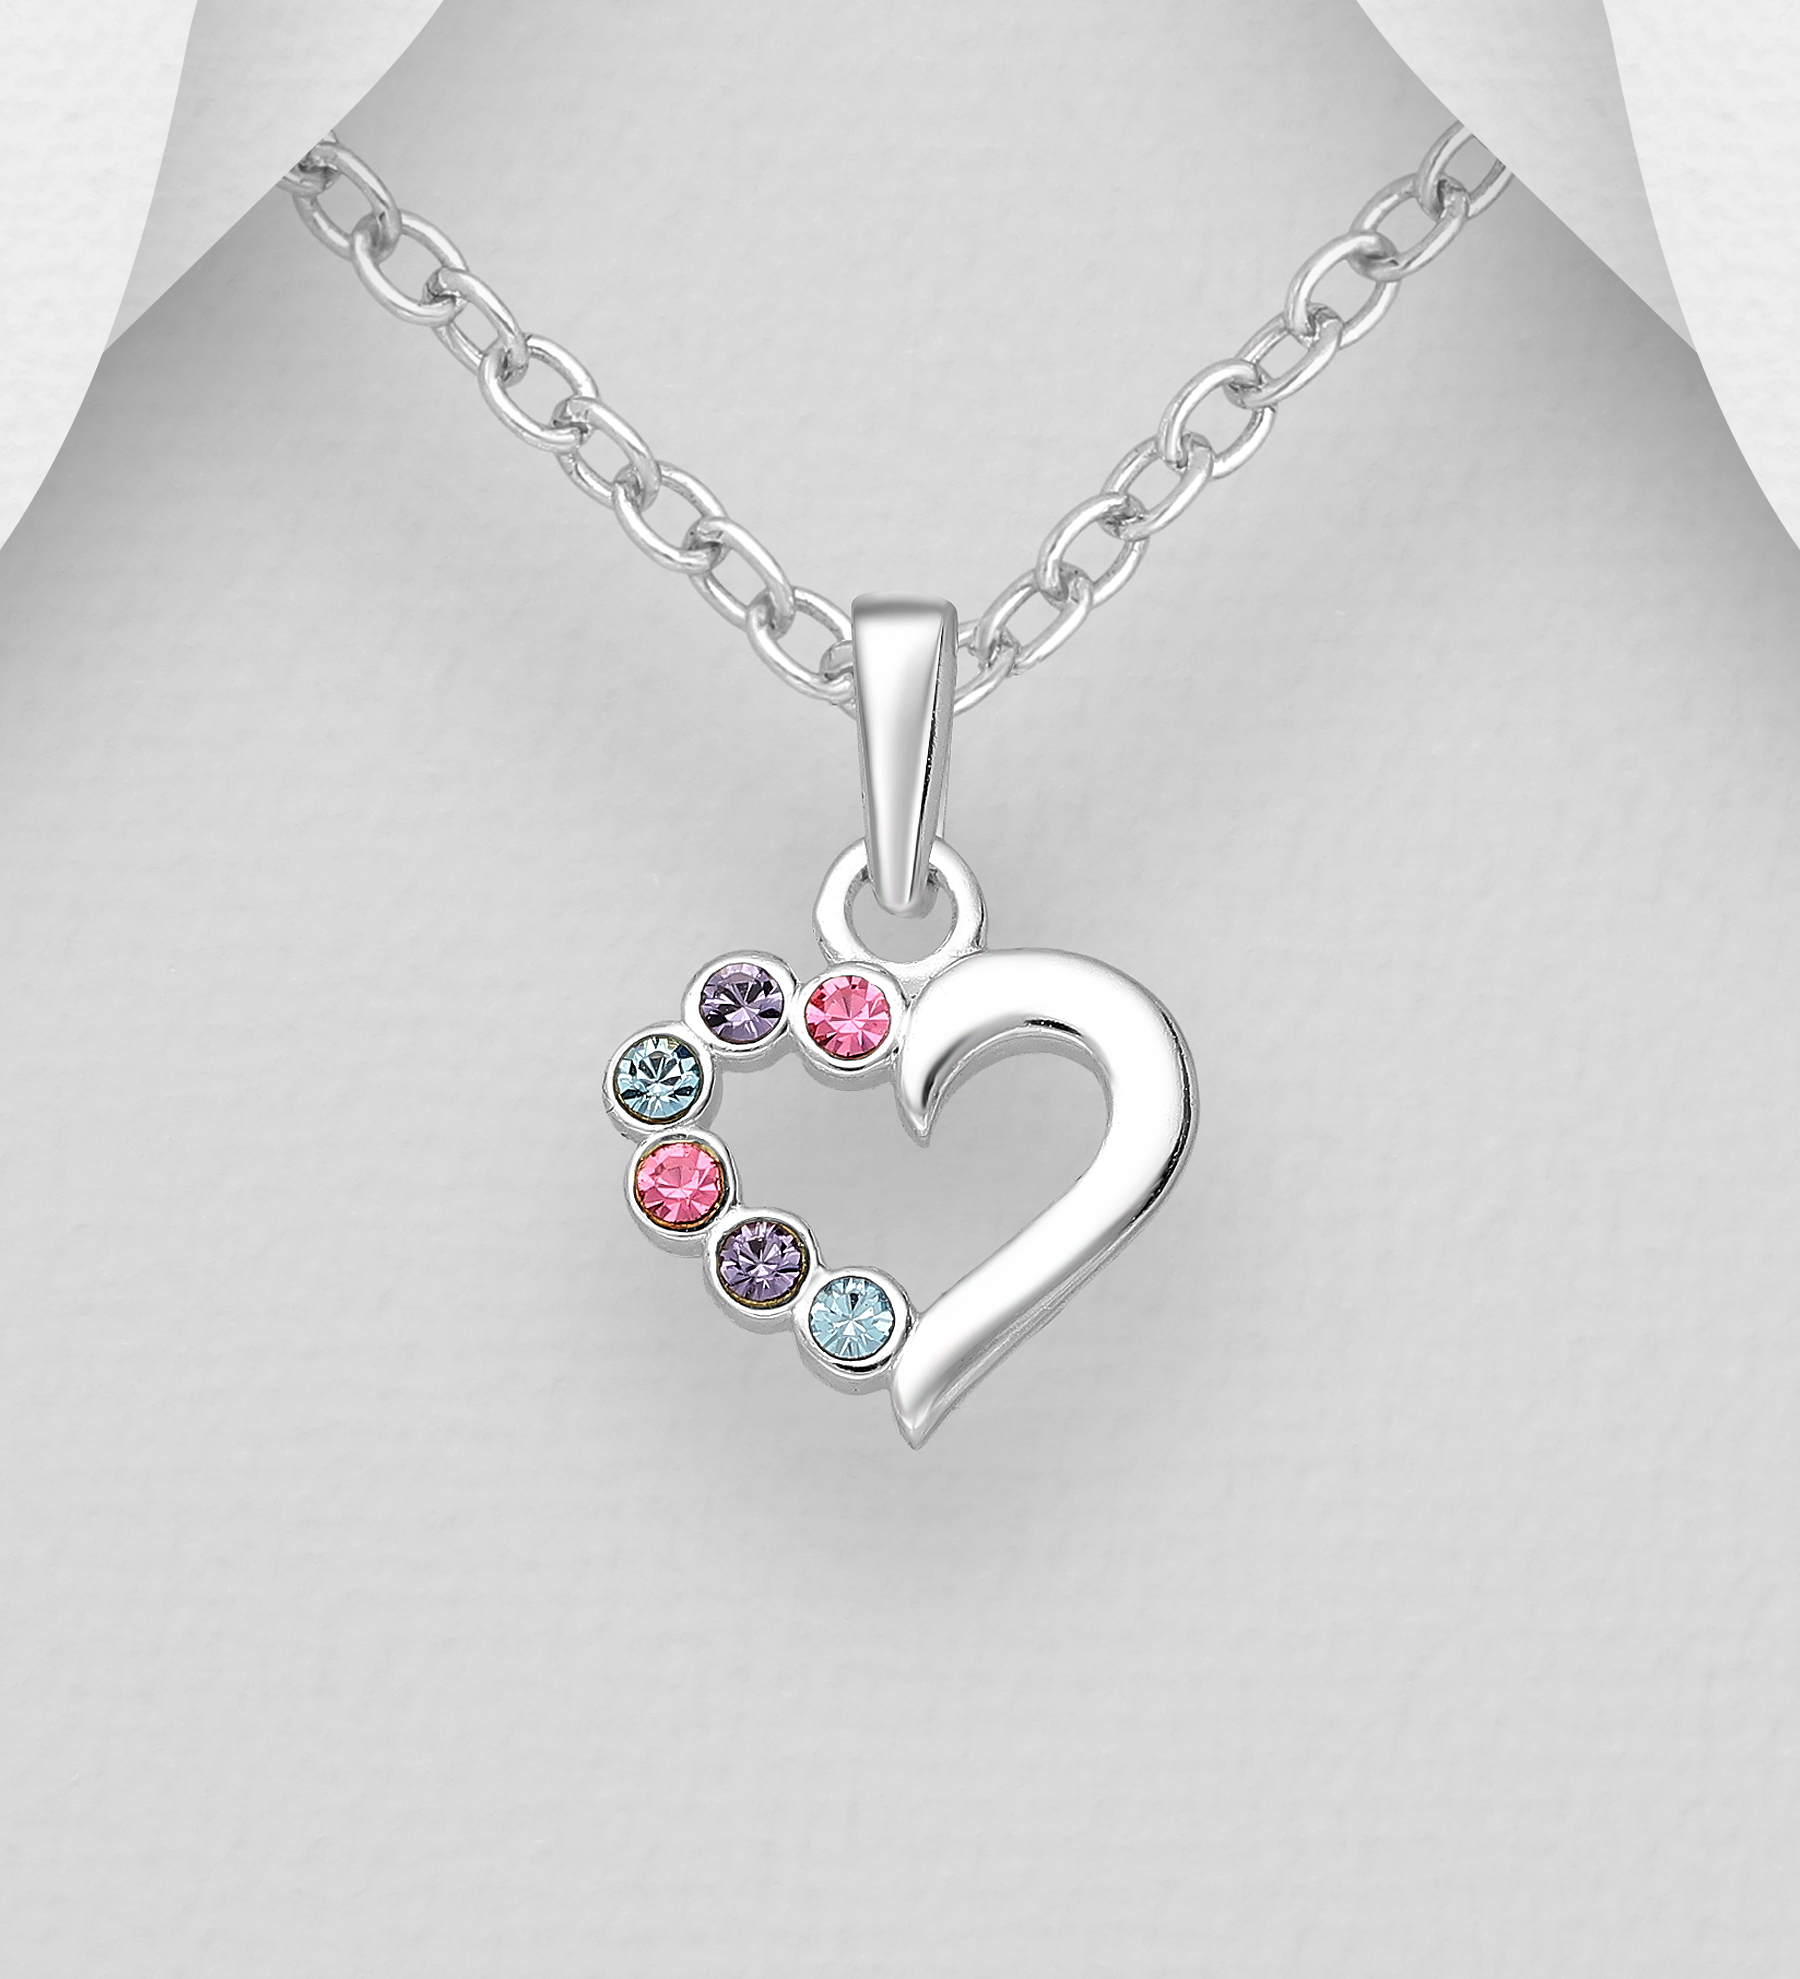 Barnhalsband Hjärta i silver med färgade glittrande stenar - sött halsband till barn i äkta 925 sterling silver